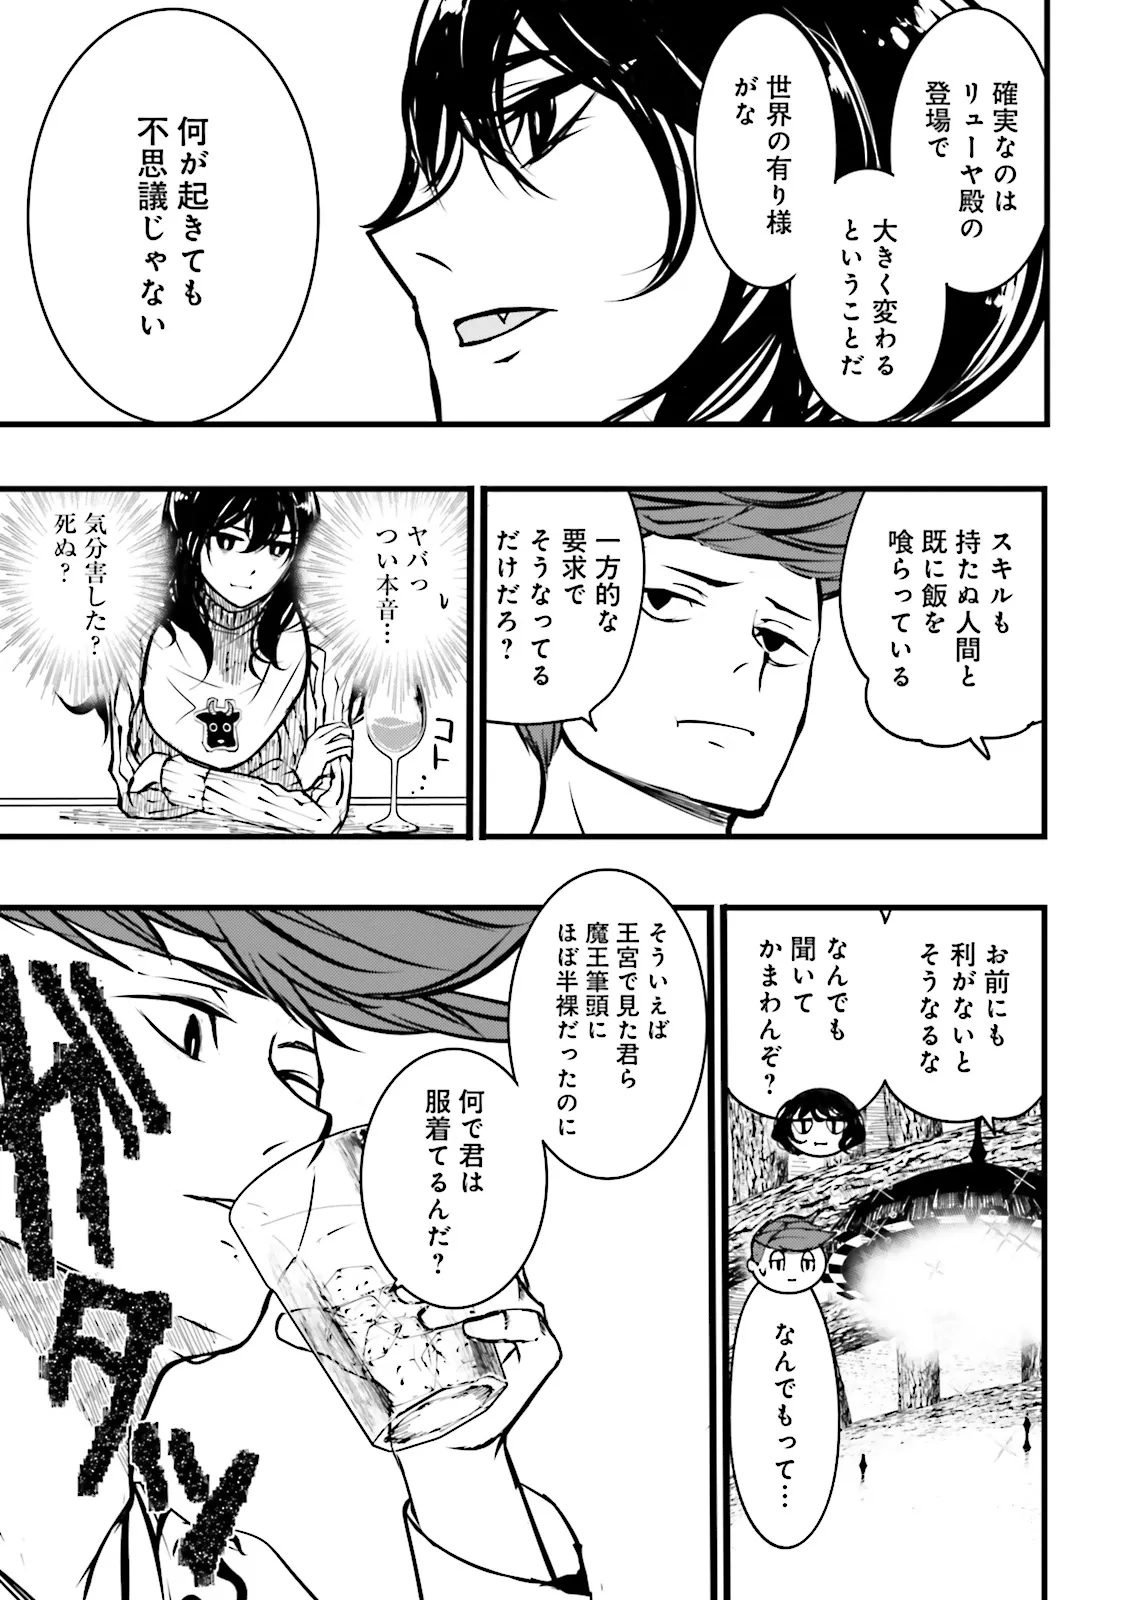 Sukiru Ga Nakereba Level wo Ageru ~ 99 Ga Kansuto No Sekai De Reberu 800 Man Kara Sutato ~ - Chapter 38.3 - Page 3